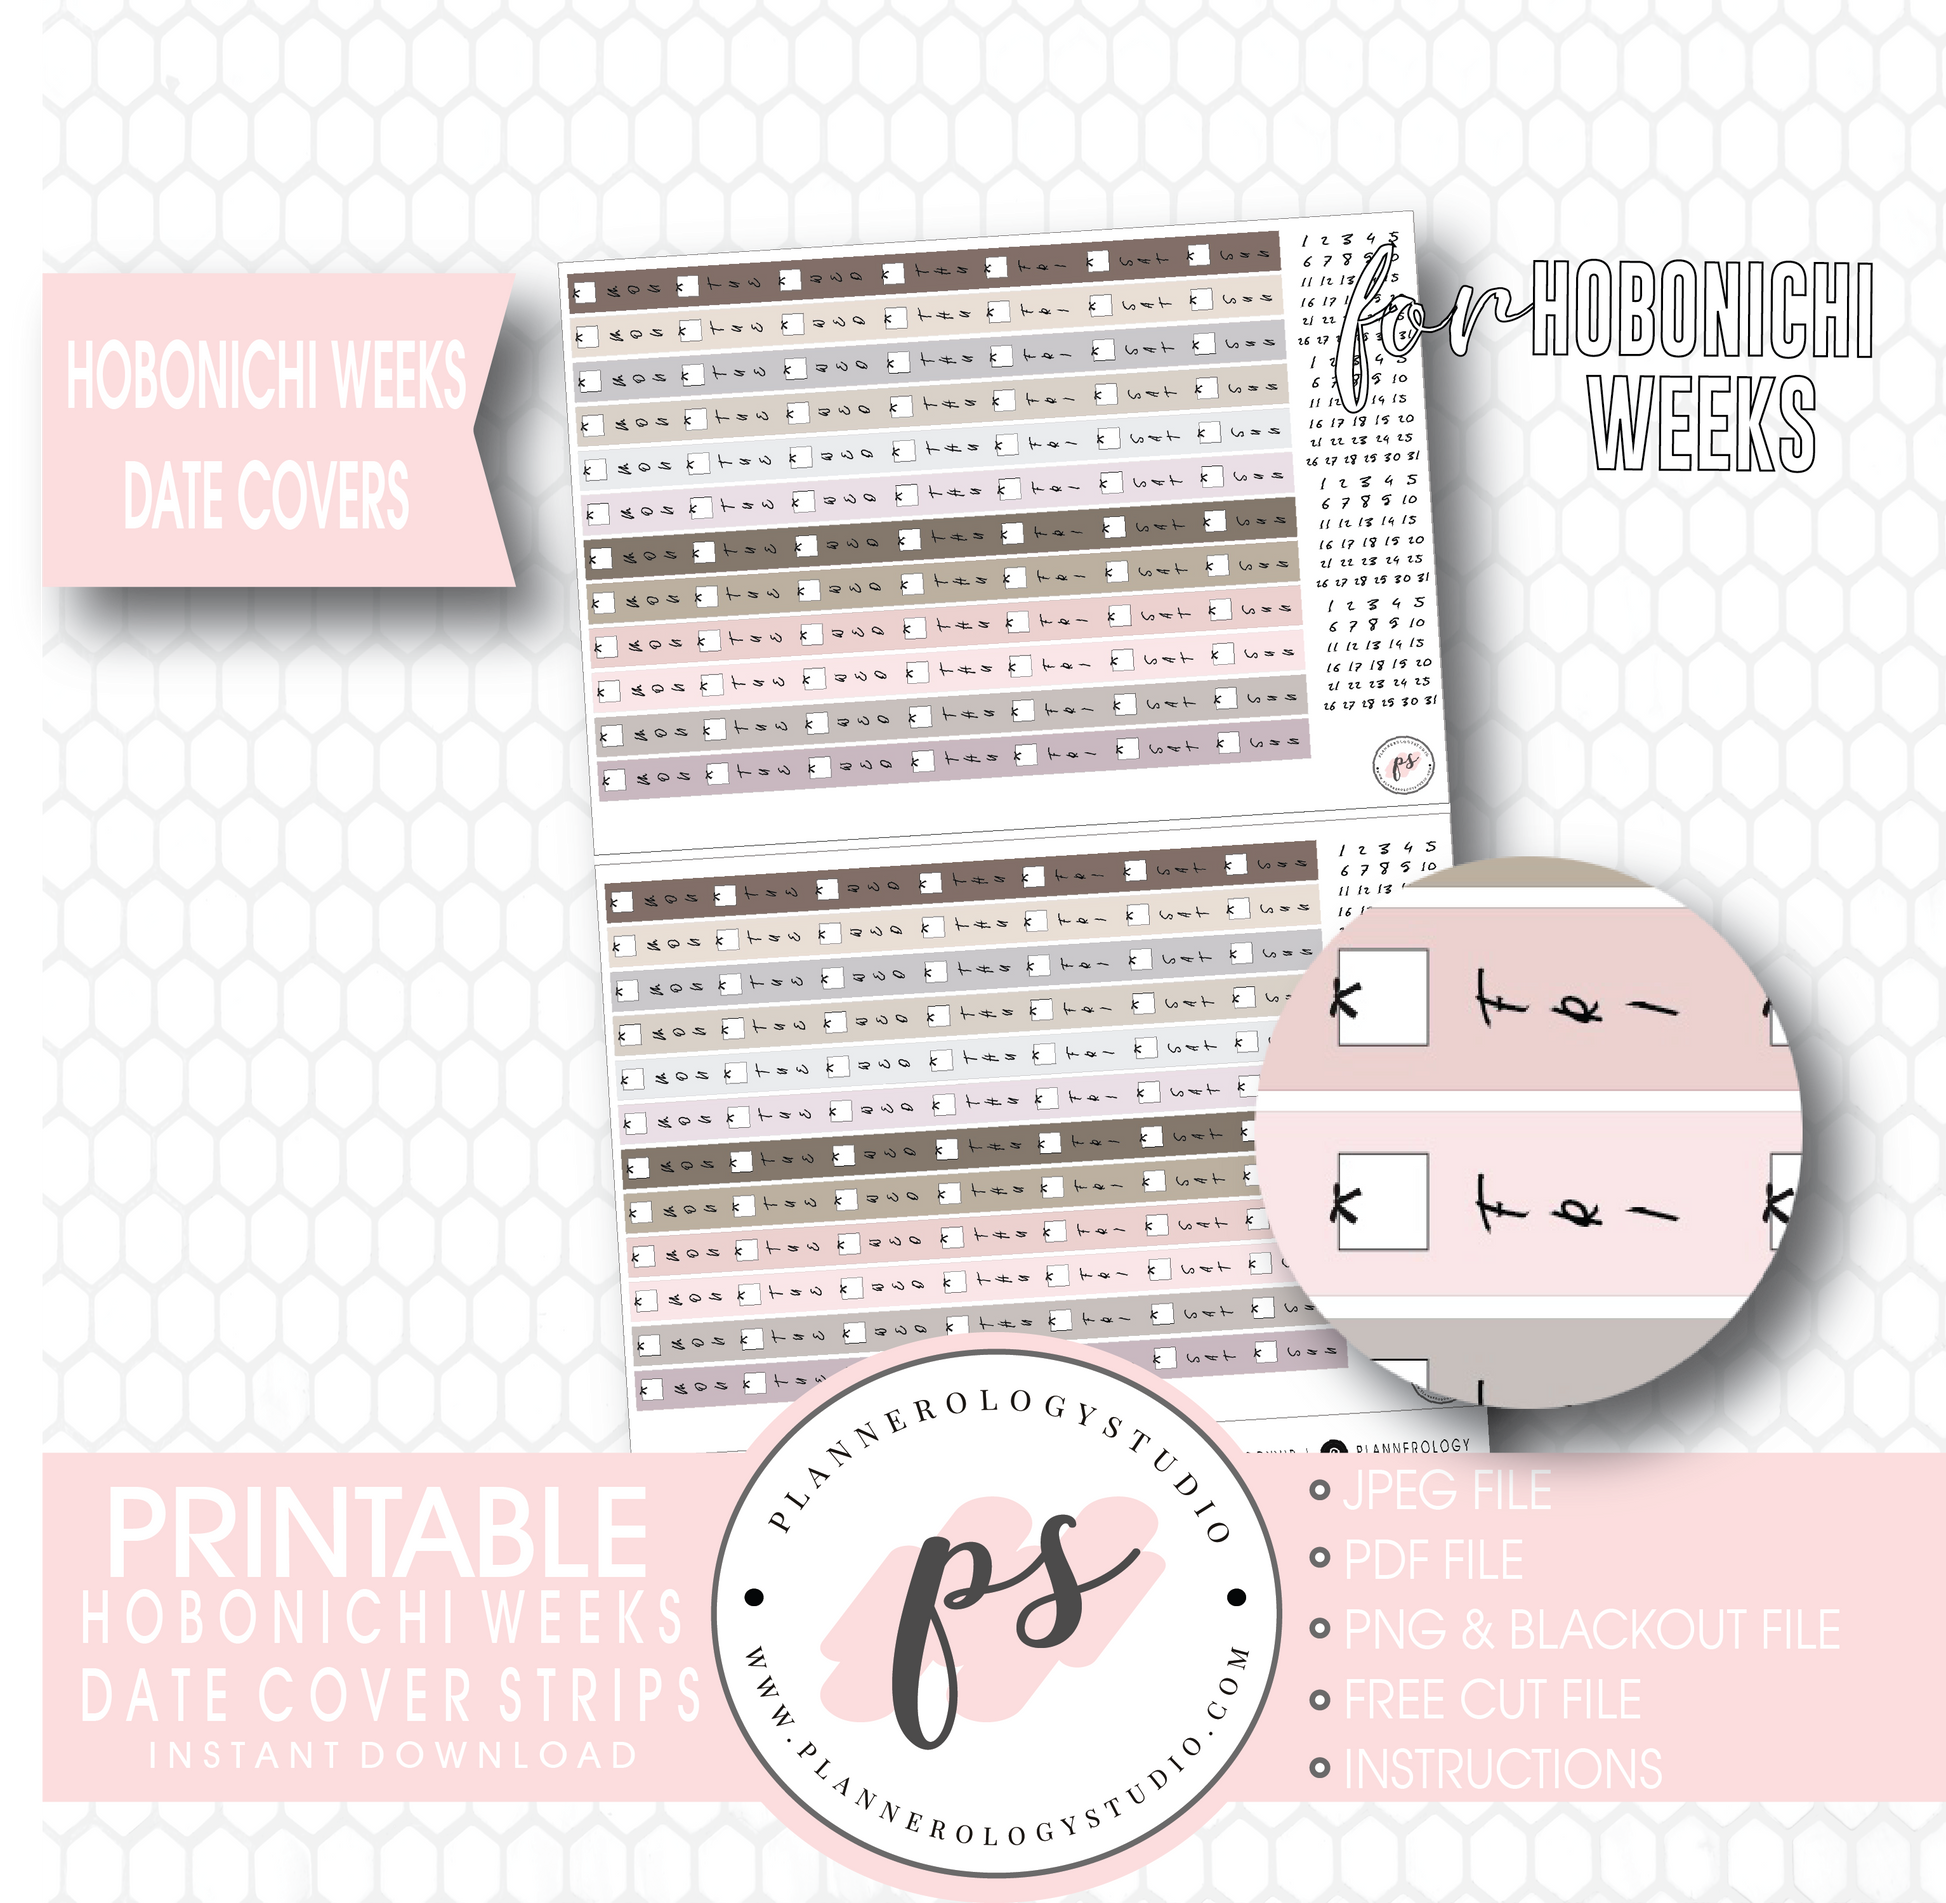 Hobonichi Weeks Date Cover Strips Digital Printable Planner Stickers - Plannerologystudio